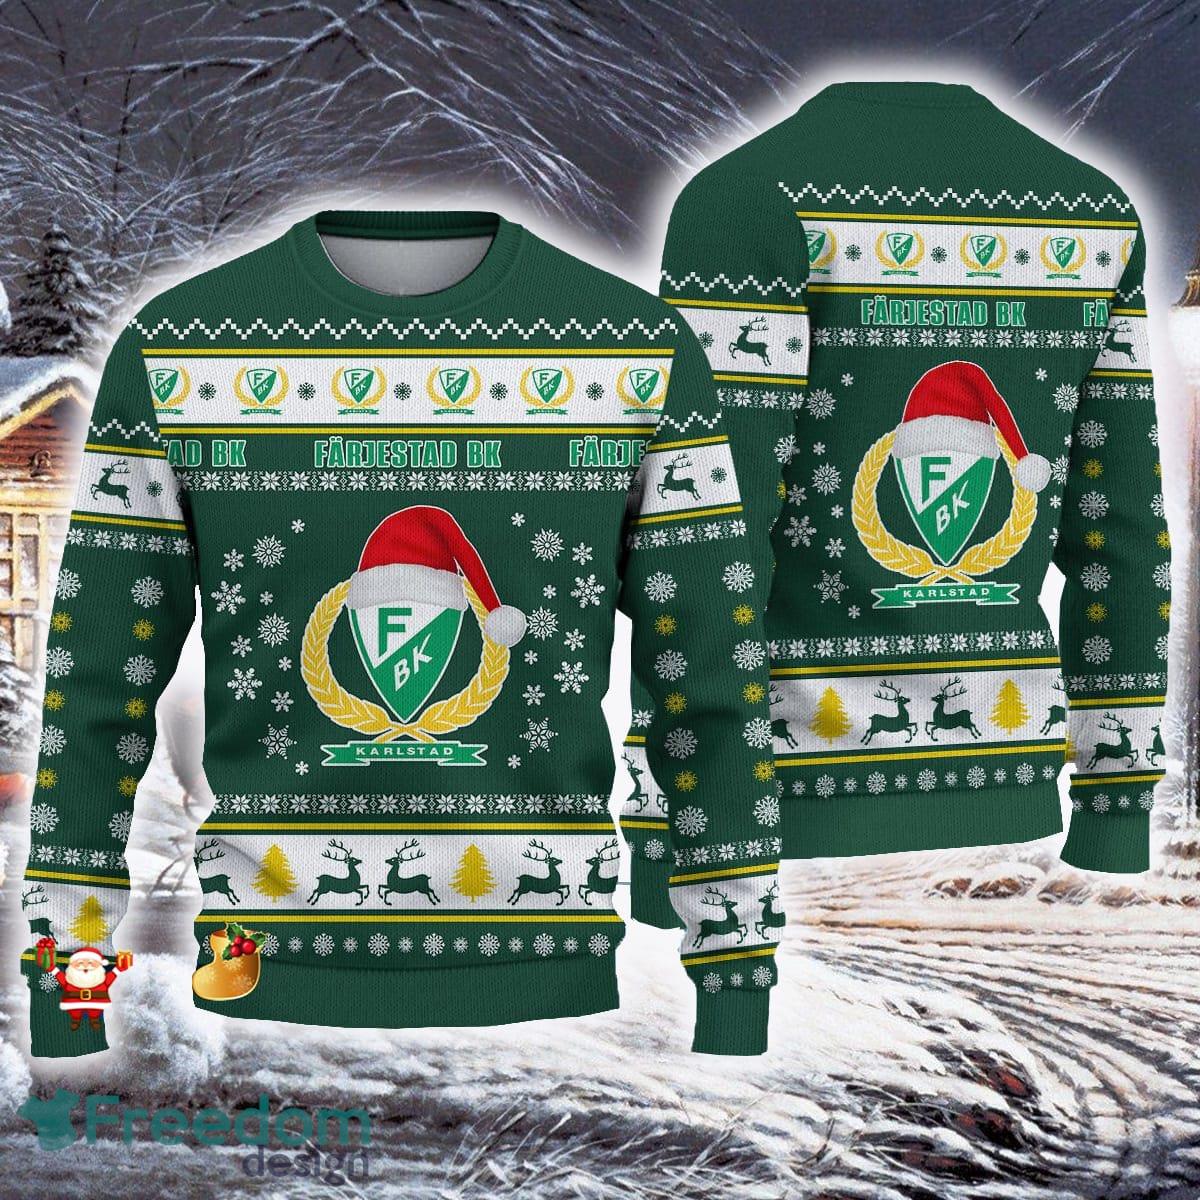 St. Louis Blues Skull Flower Ugly Logo NHL Fans Ugly Christmas Sweater Gift  Men Women - Freedomdesign